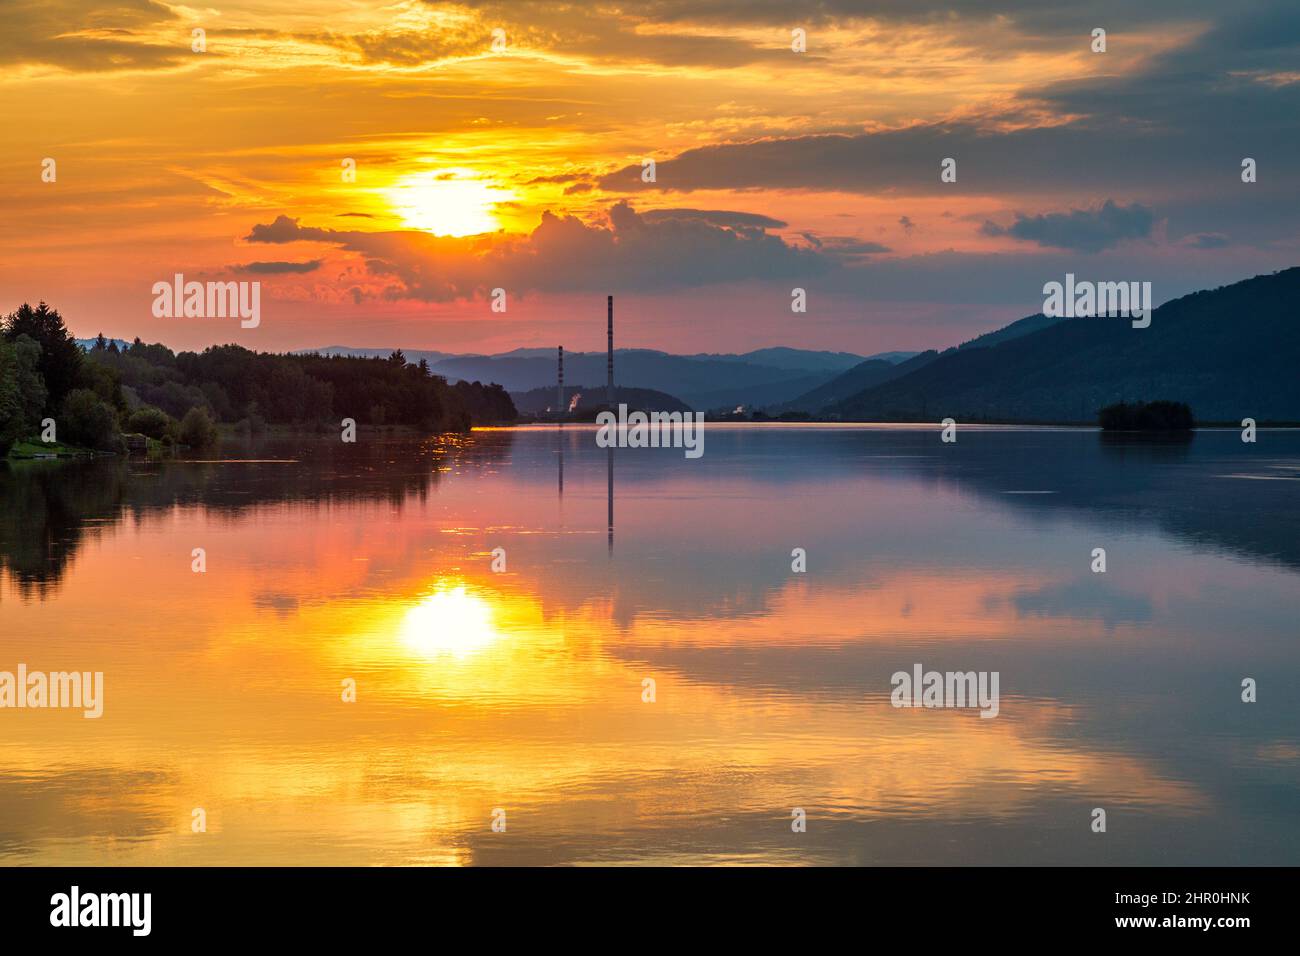 Paysage industriel avec des constructions de cheminées reflétées sur la surface de l'eau du barrage au coucher du soleil. Barrage de Zilina dans le nord de la Slovaquie, en Europe. Banque D'Images